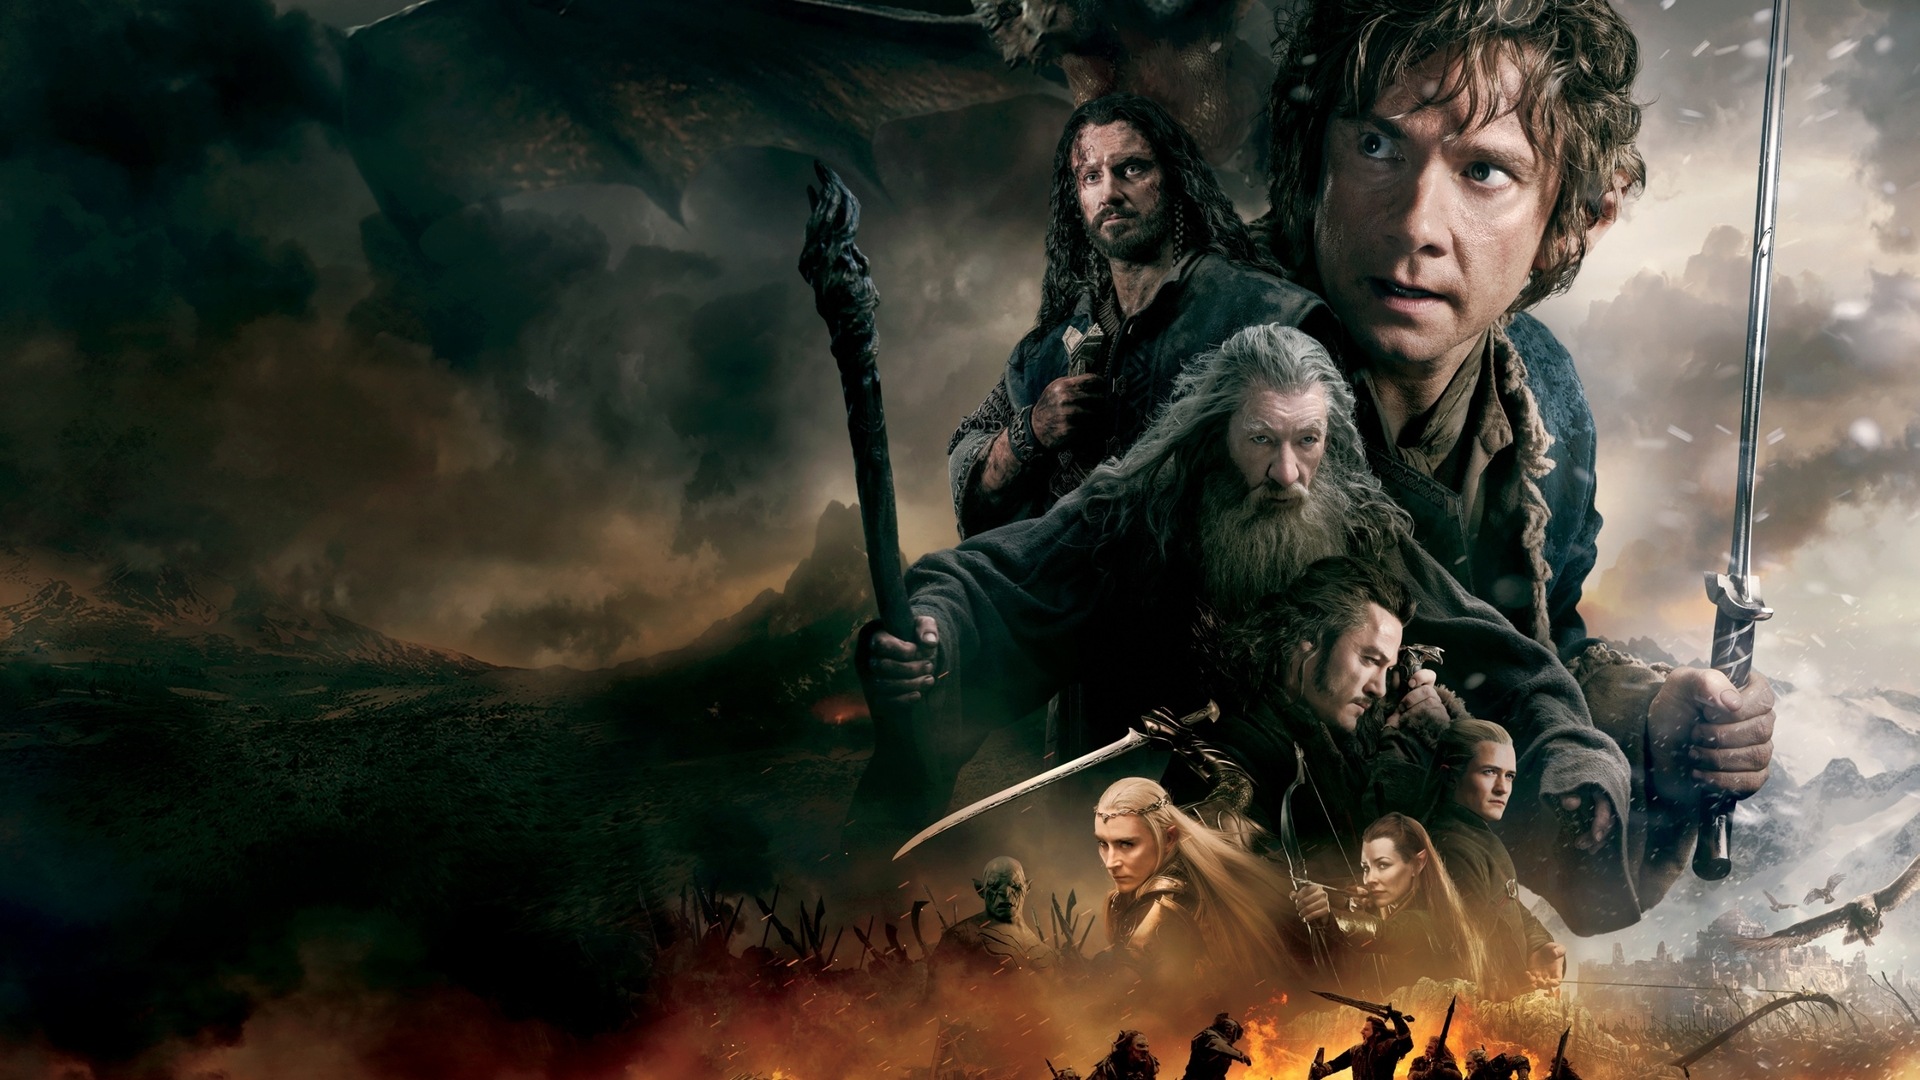 El Hobbit: La Batalla de los Cinco Ejércitos, fondos de pantalla de películas de alta definición #10 - 1920x1080